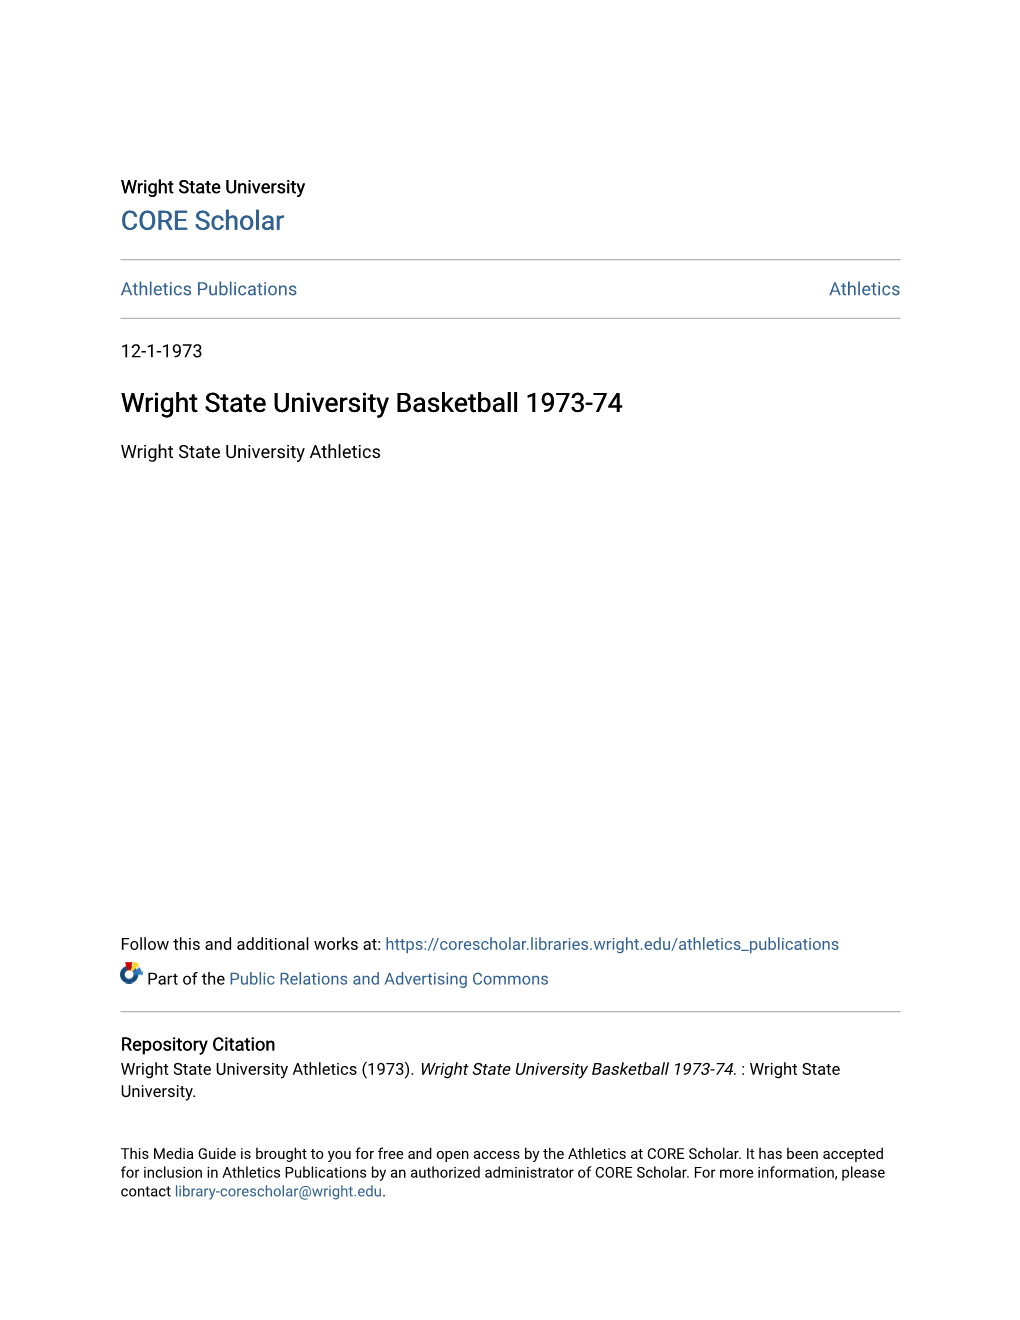 Wright State University Basketball 1973-74